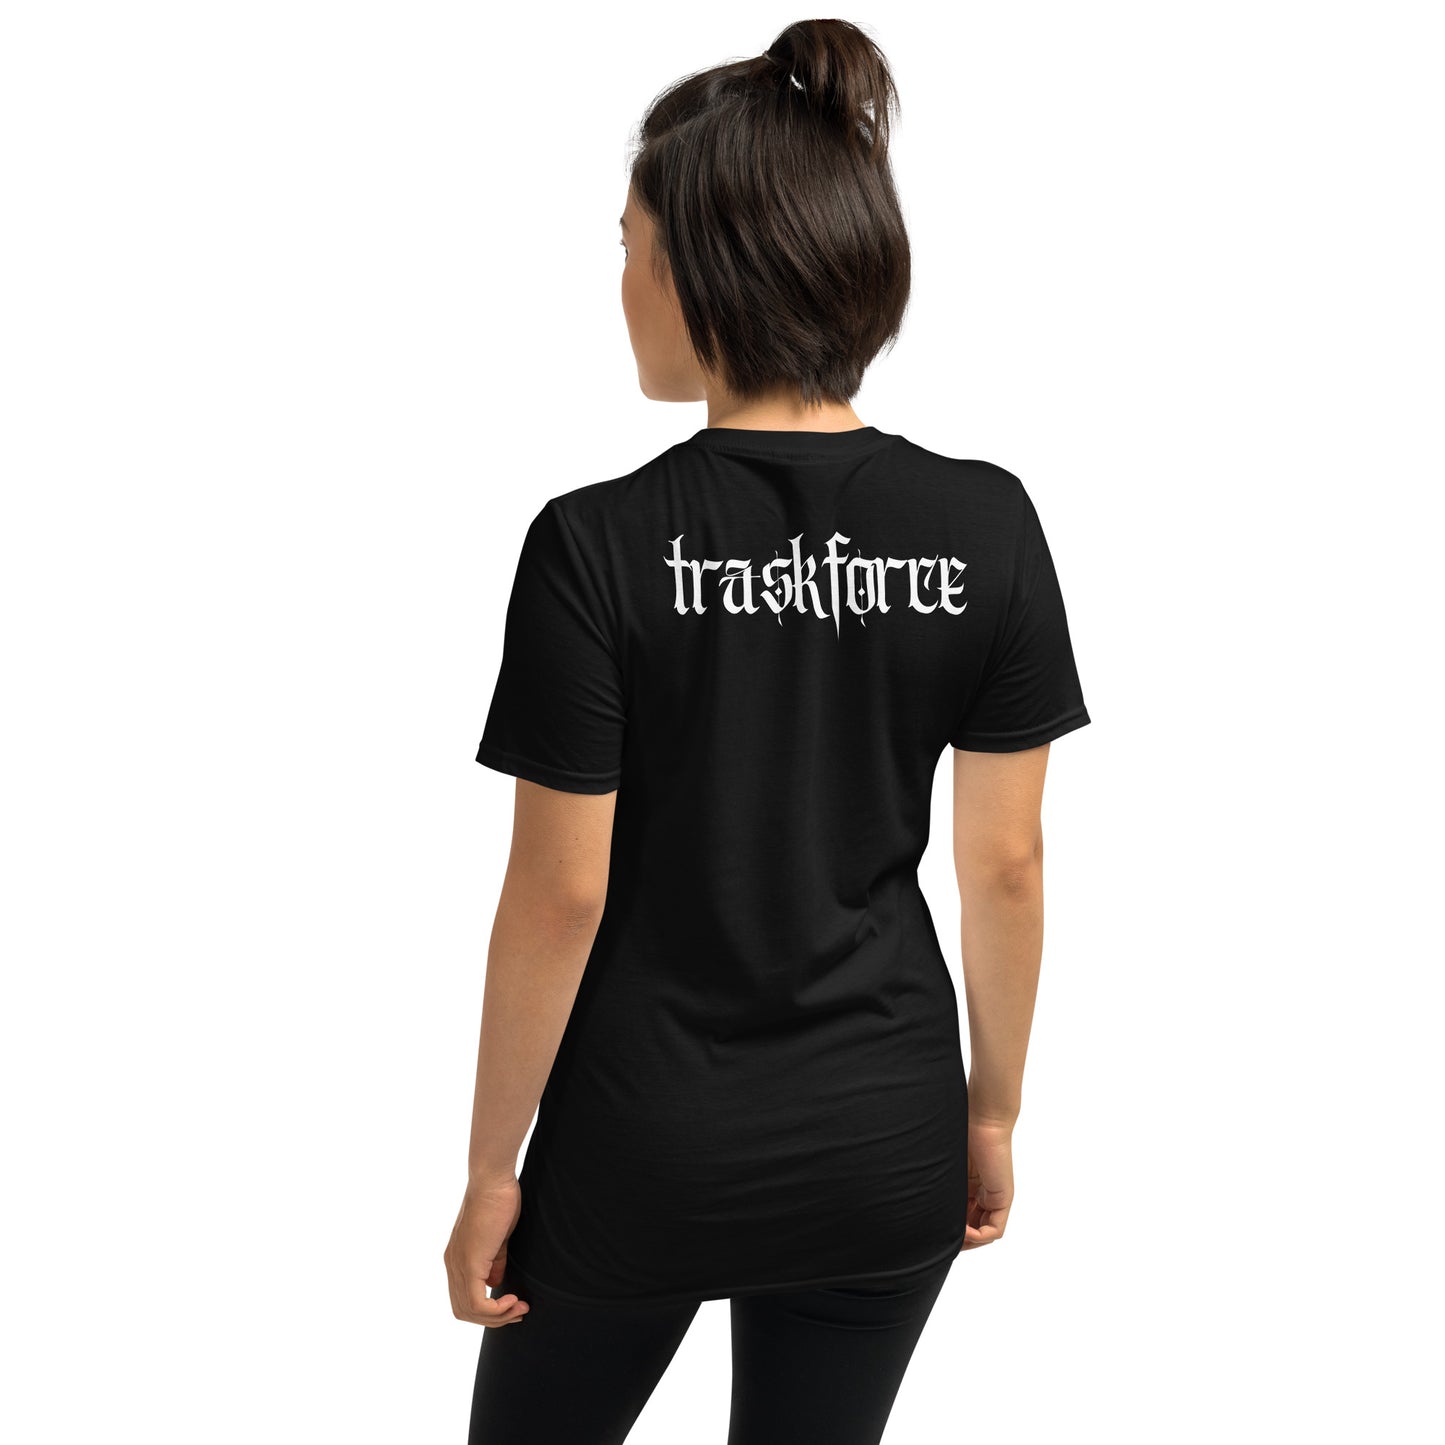 "Cal Trask Traskforce" Short-Sleeve Unisex T-Shirt